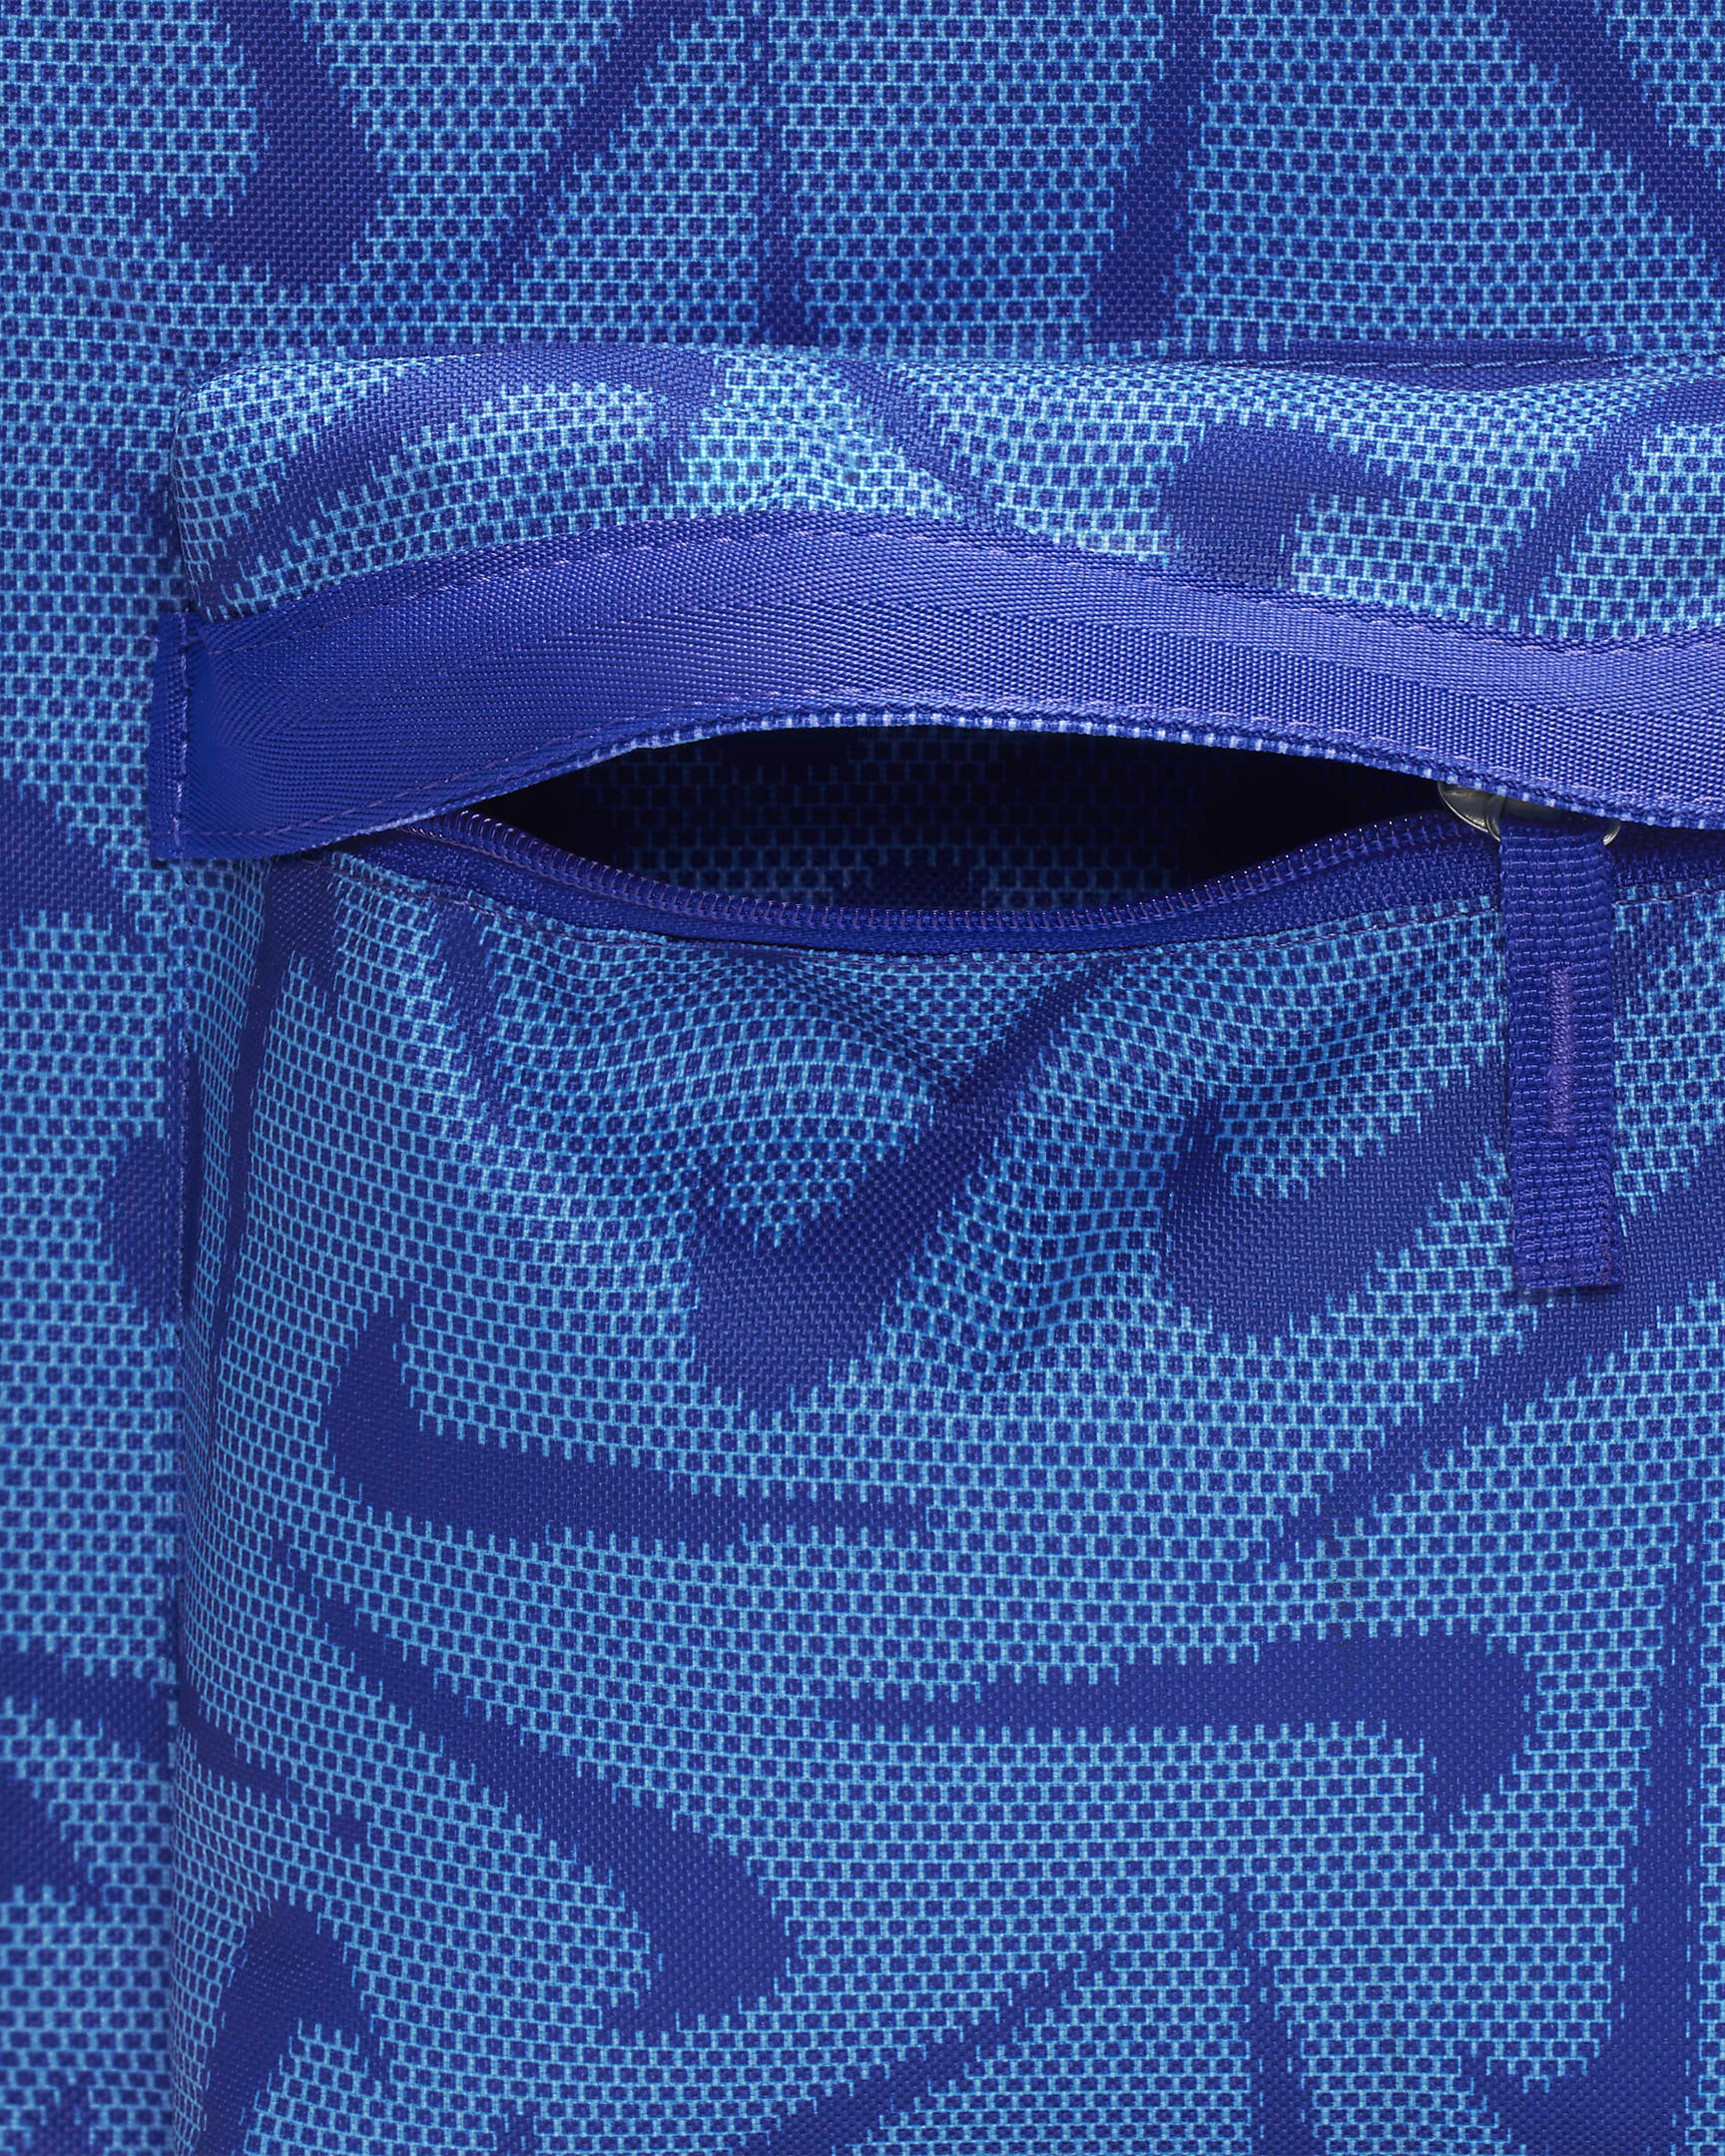 Nike Heritage Backpack (25L). Nike ID